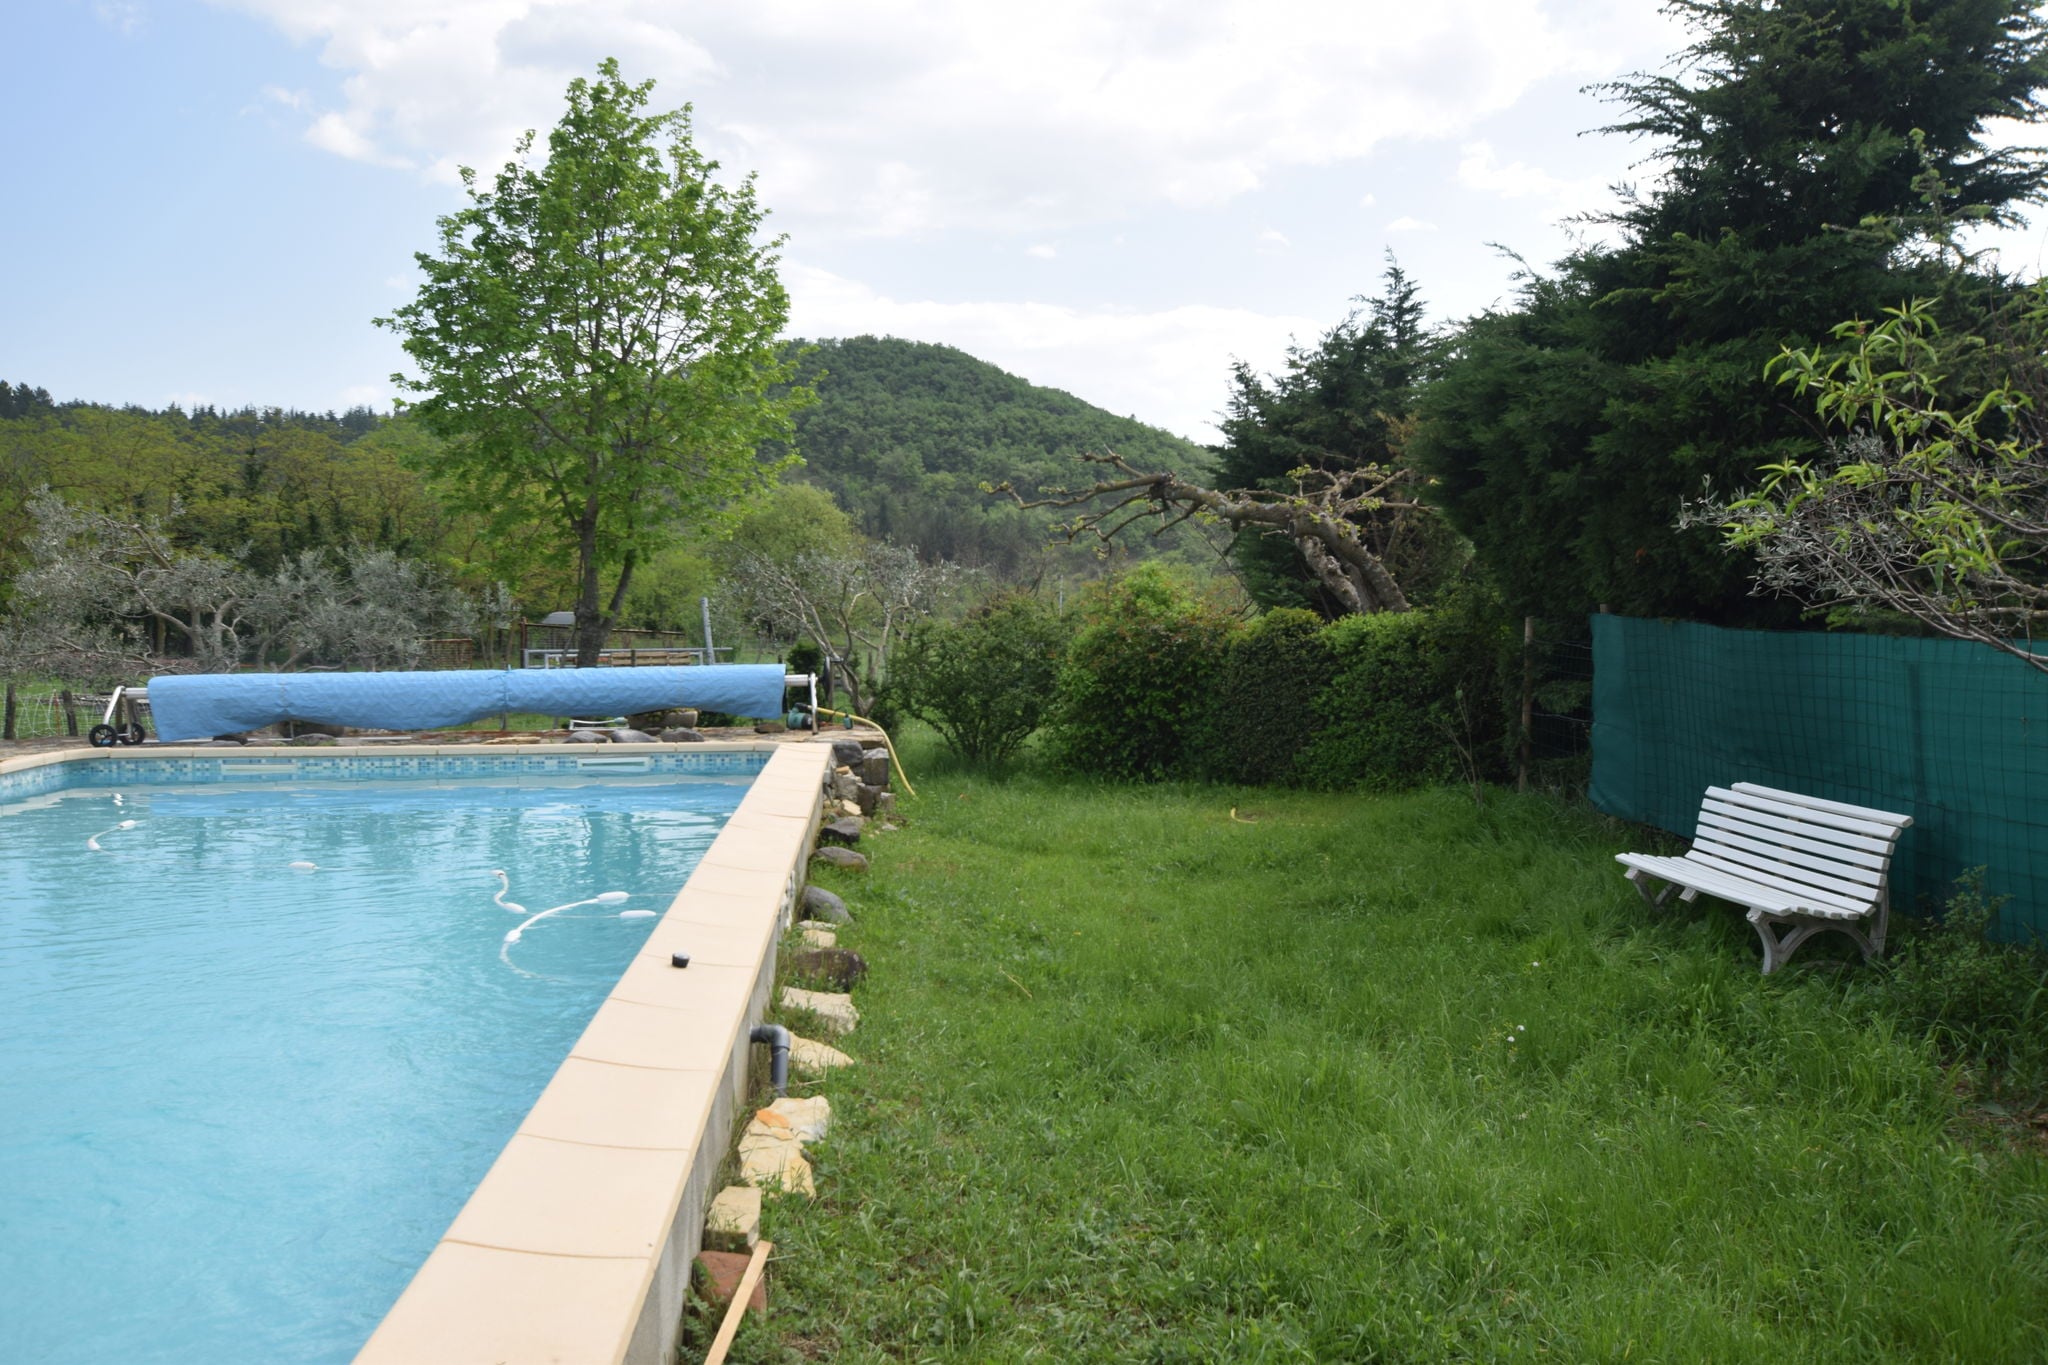 Location de vacances de charme à Mirabel avec piscine